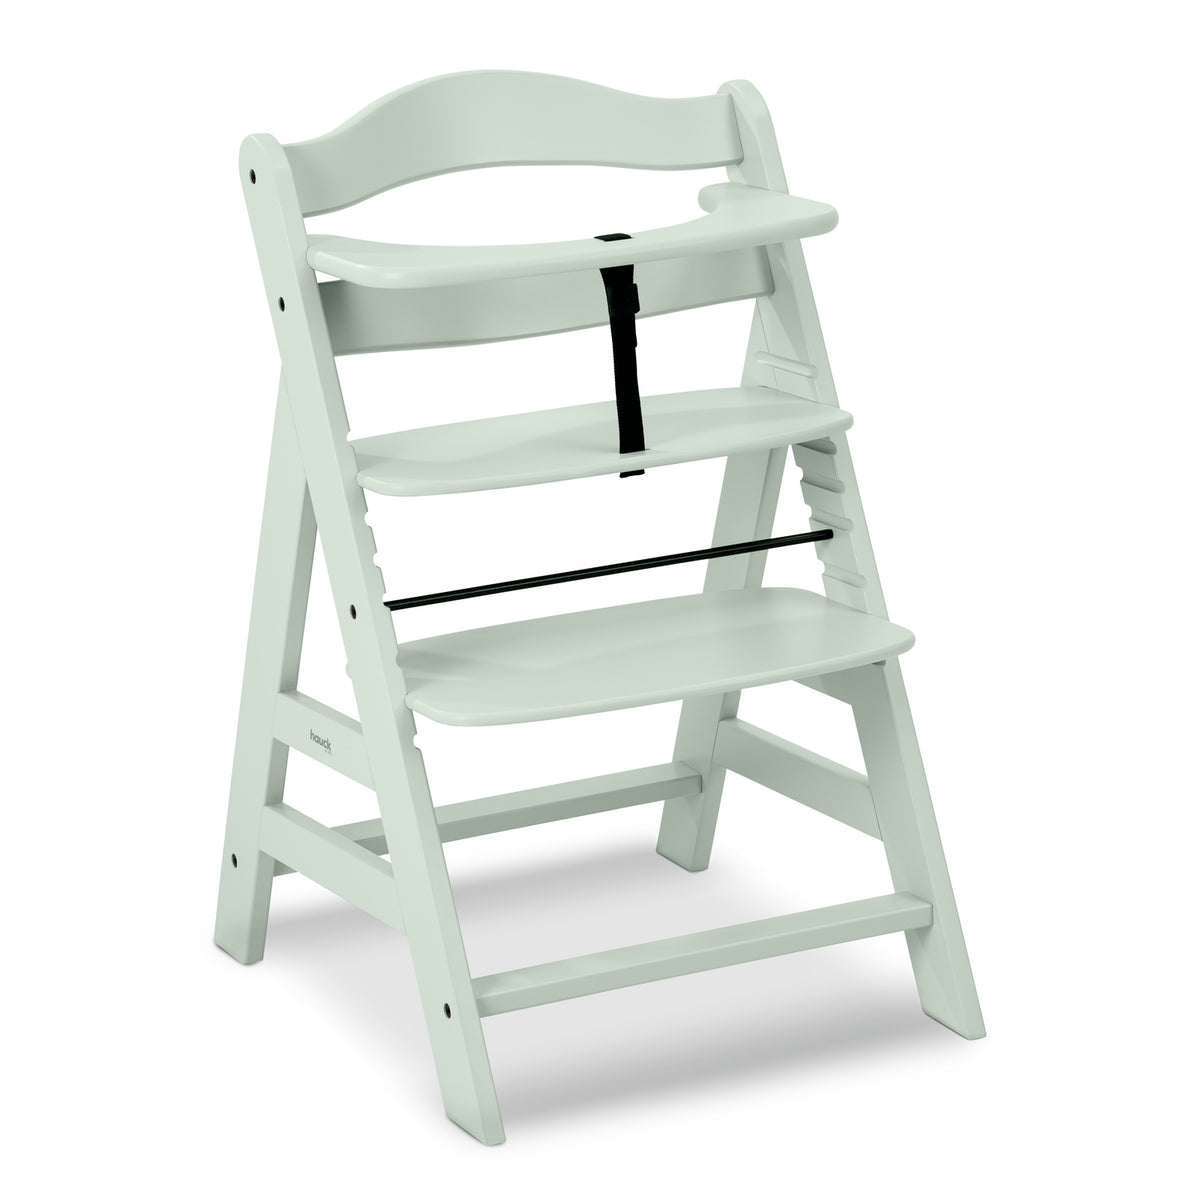 Alpha+ Grow Along Adjustable Beechwood Wooden High Chair